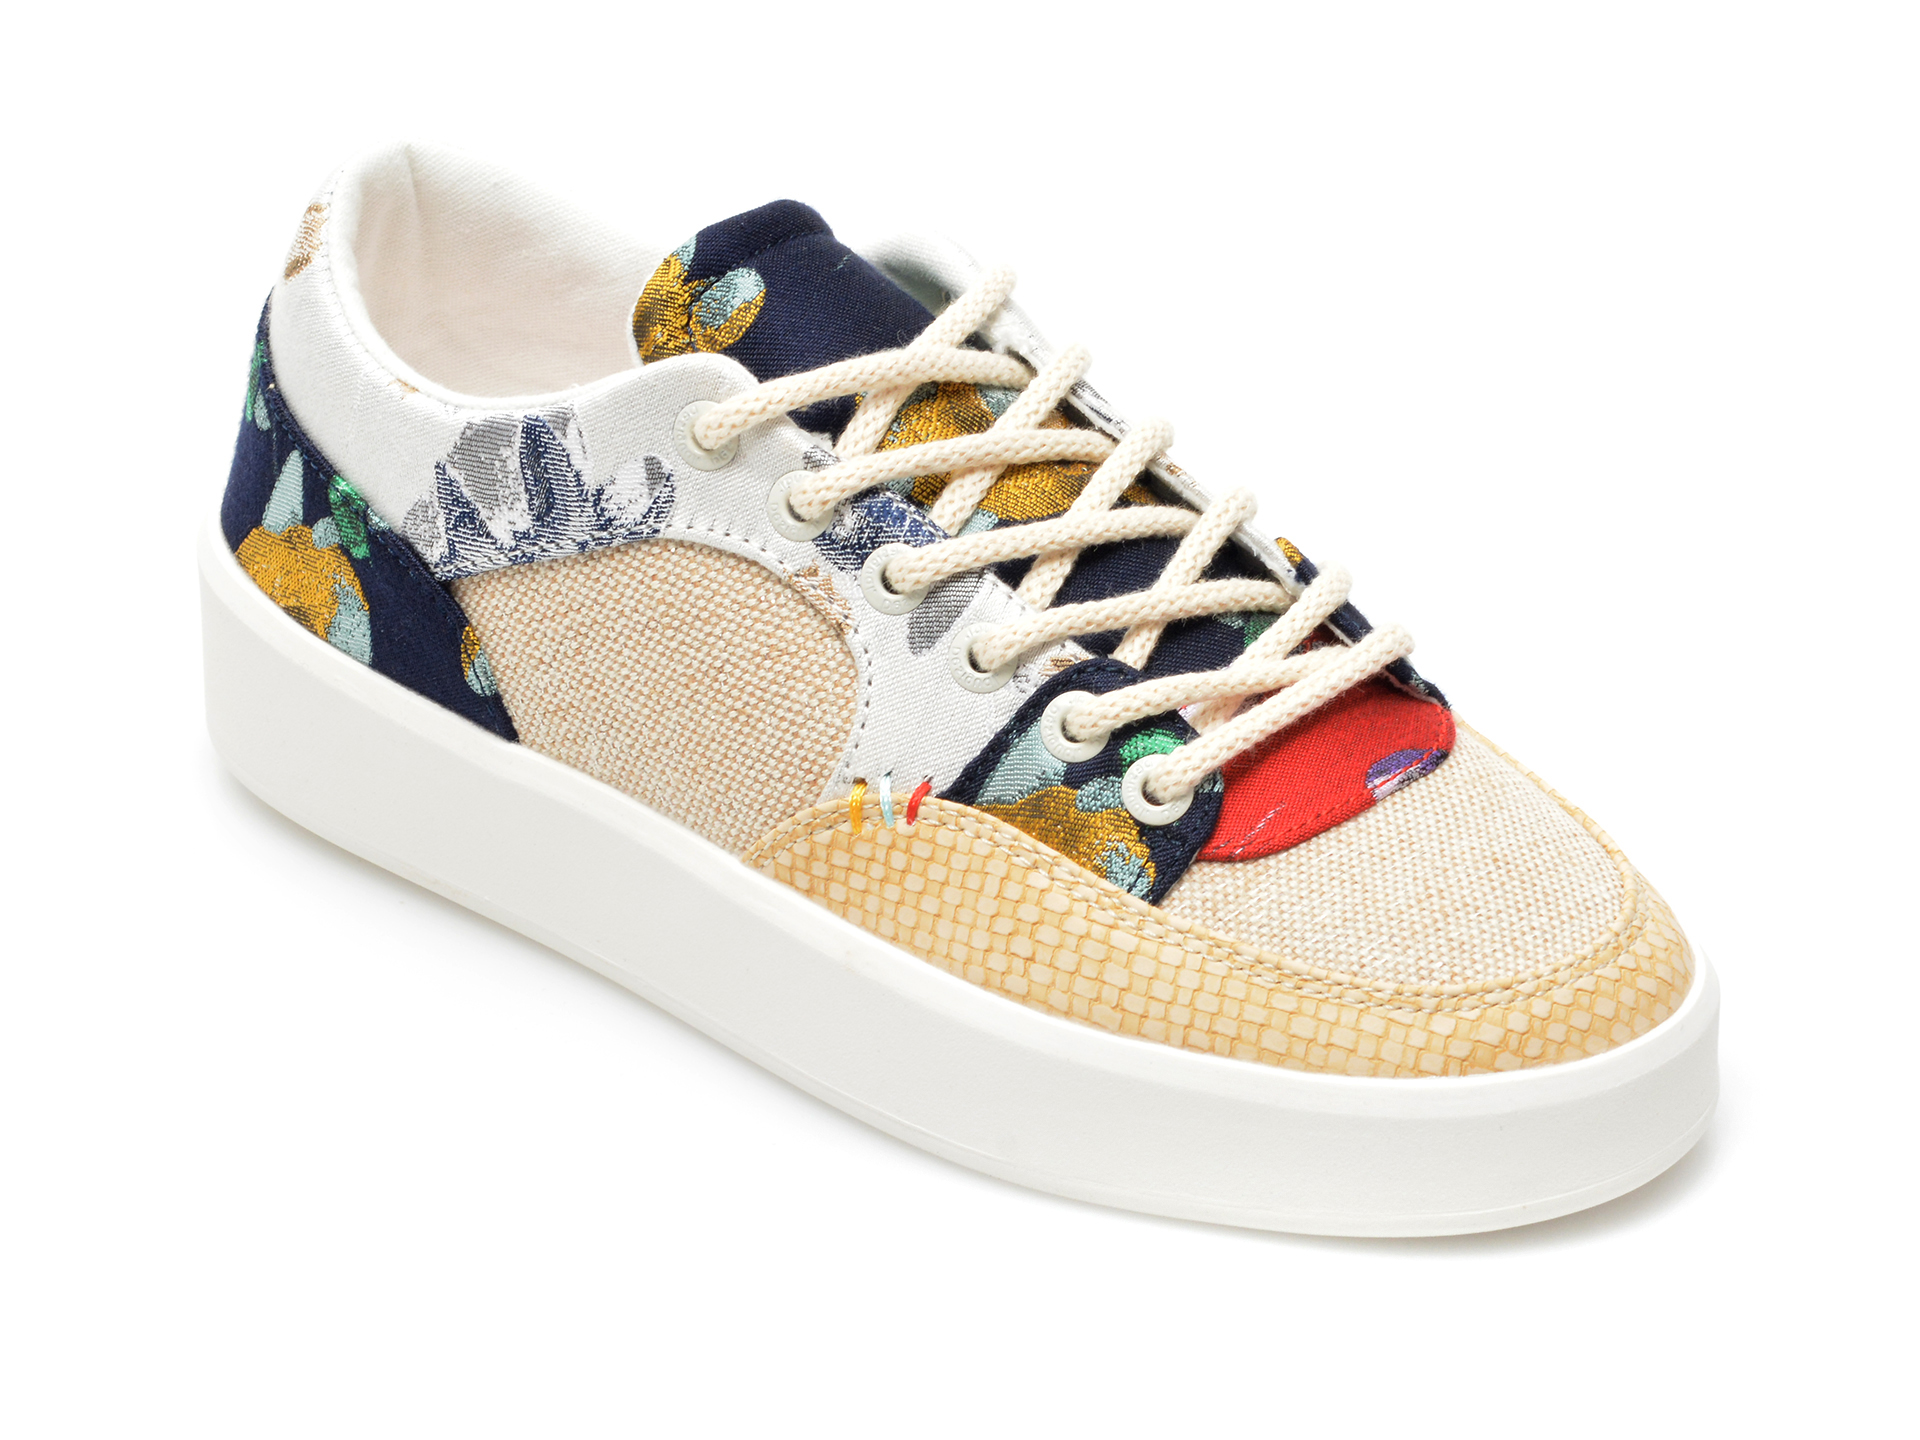 Pantofi sport DESIGUAL multicolori, SSKA06, din material textil si piele ecologica Desigual imagine noua